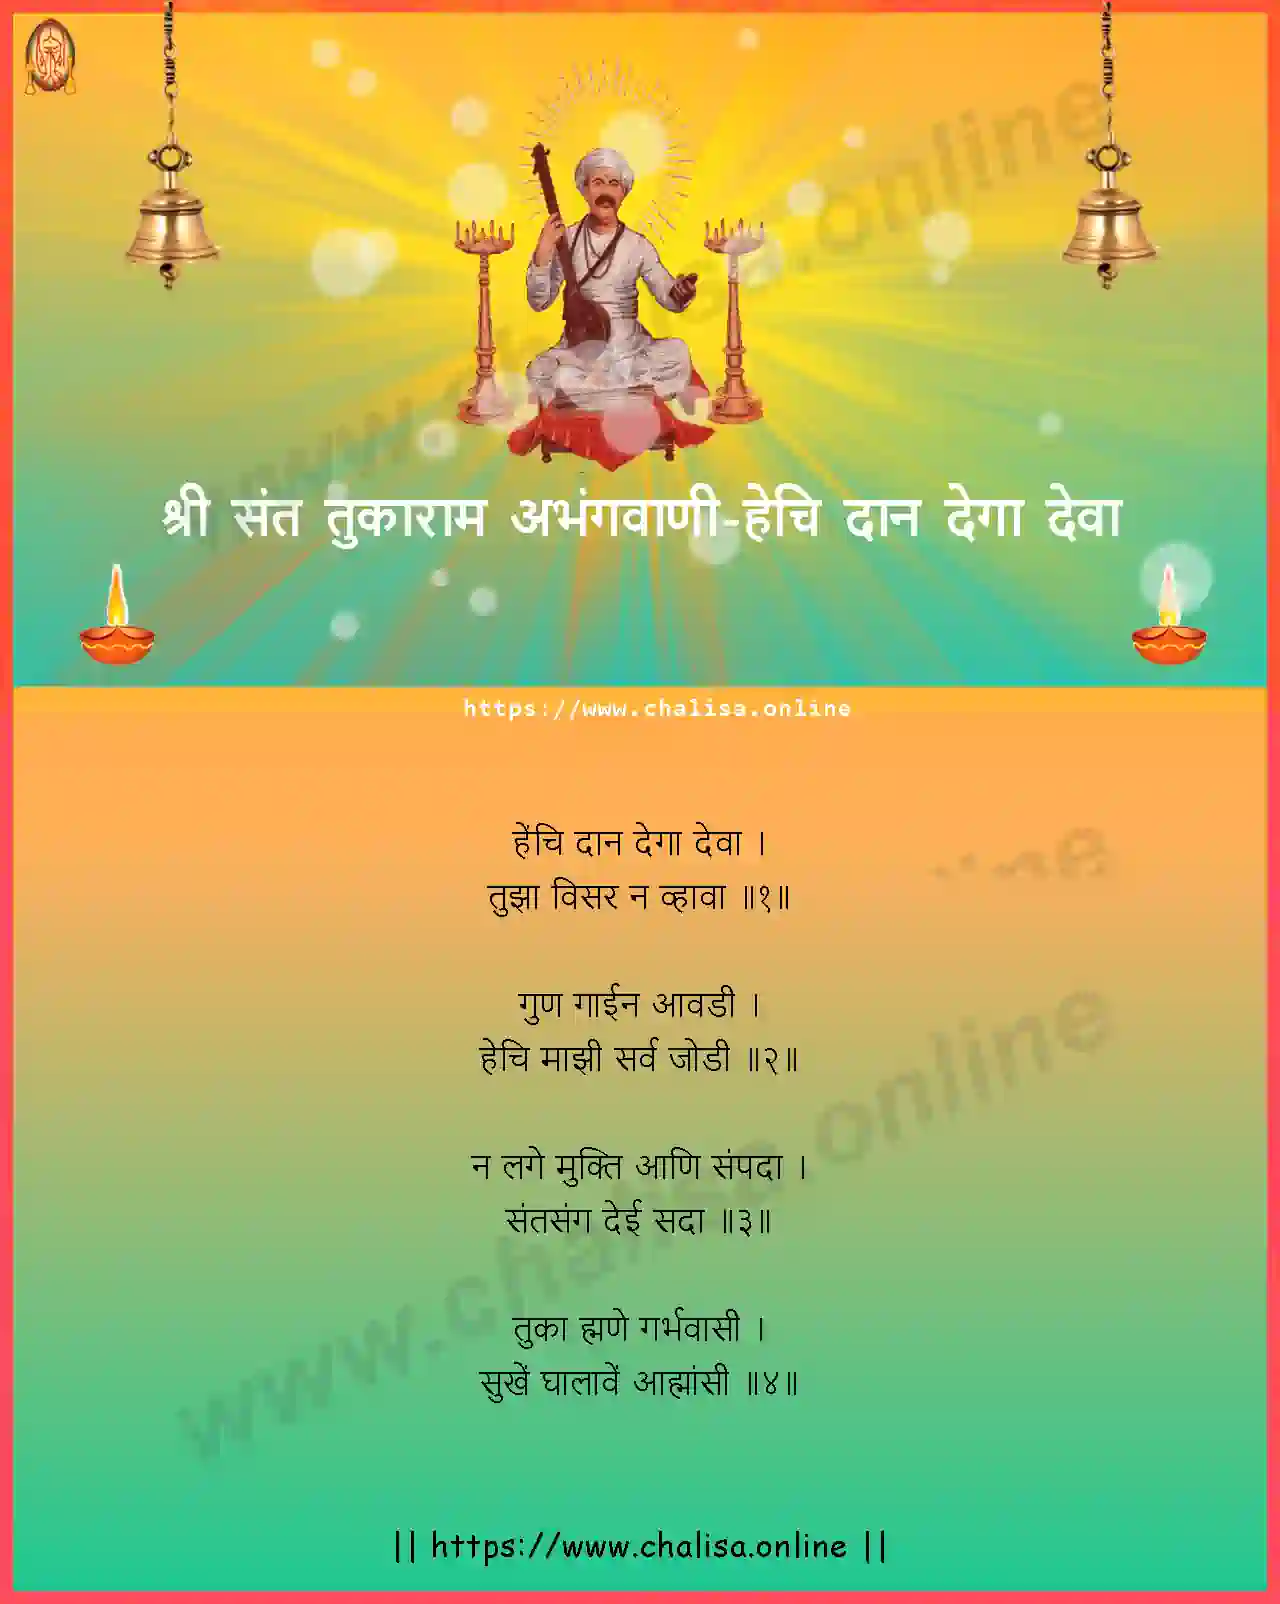 hechi-daan-dega-deva-shri-sant-tukaram-abhang-marathi-lyrics-download